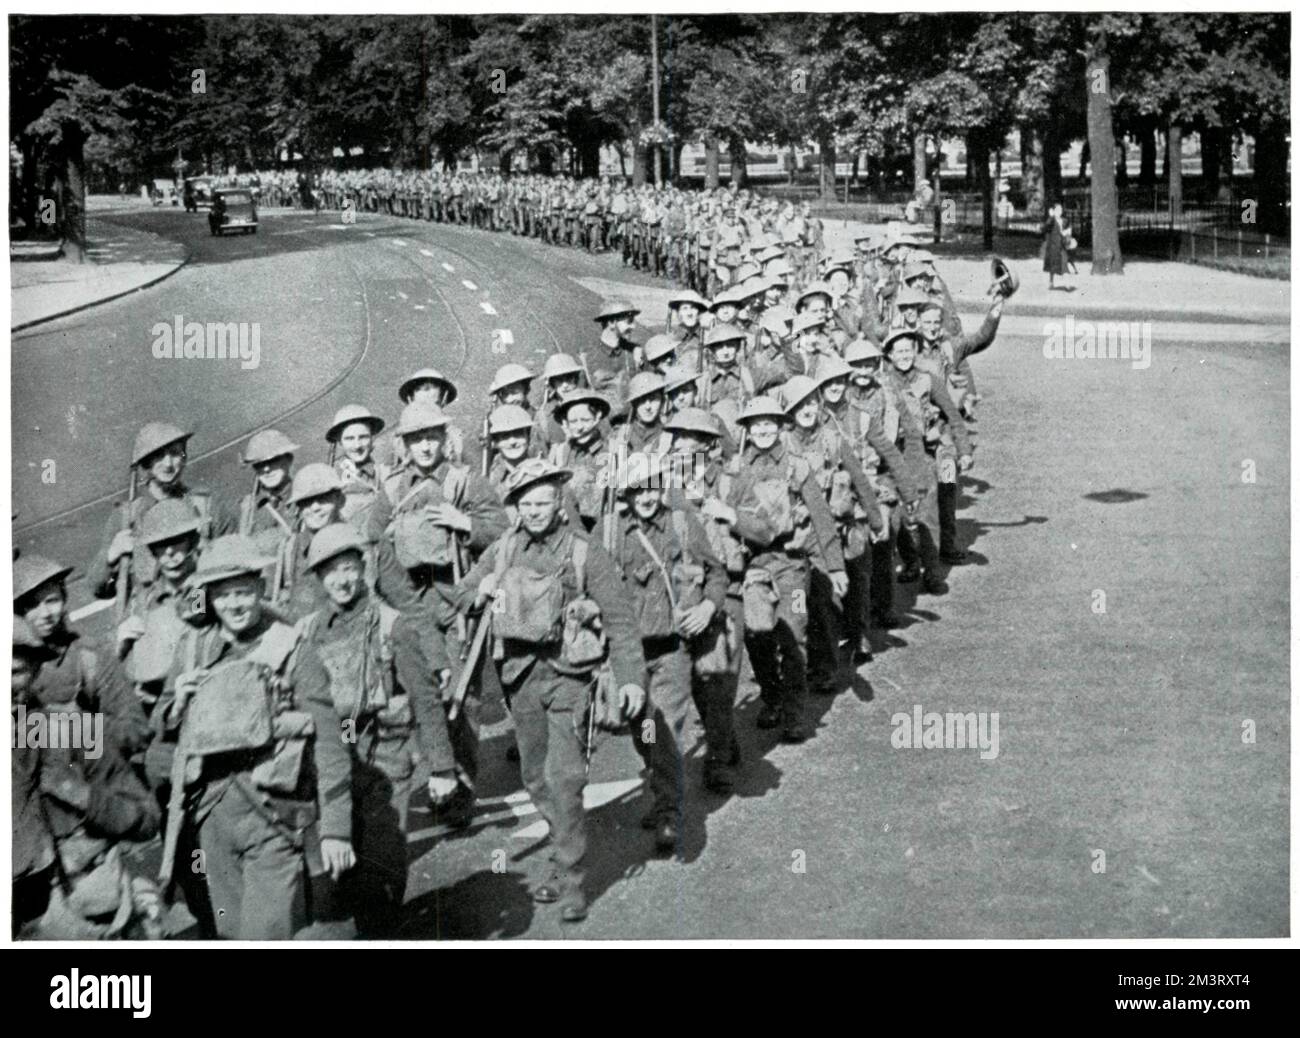 Ein Kontingent britischer Soldaten marschiert, bevor sie ins Ausland gebracht werden, um in Frankreich stationiert zu werden. Die Sphäre berichtet, dass die ersten britischen Truppen in Frankreich angekommen waren, aber in den ersten Wochen des Krieges noch nicht in Aktion getreten waren. Datum: September 1939 Stockfoto